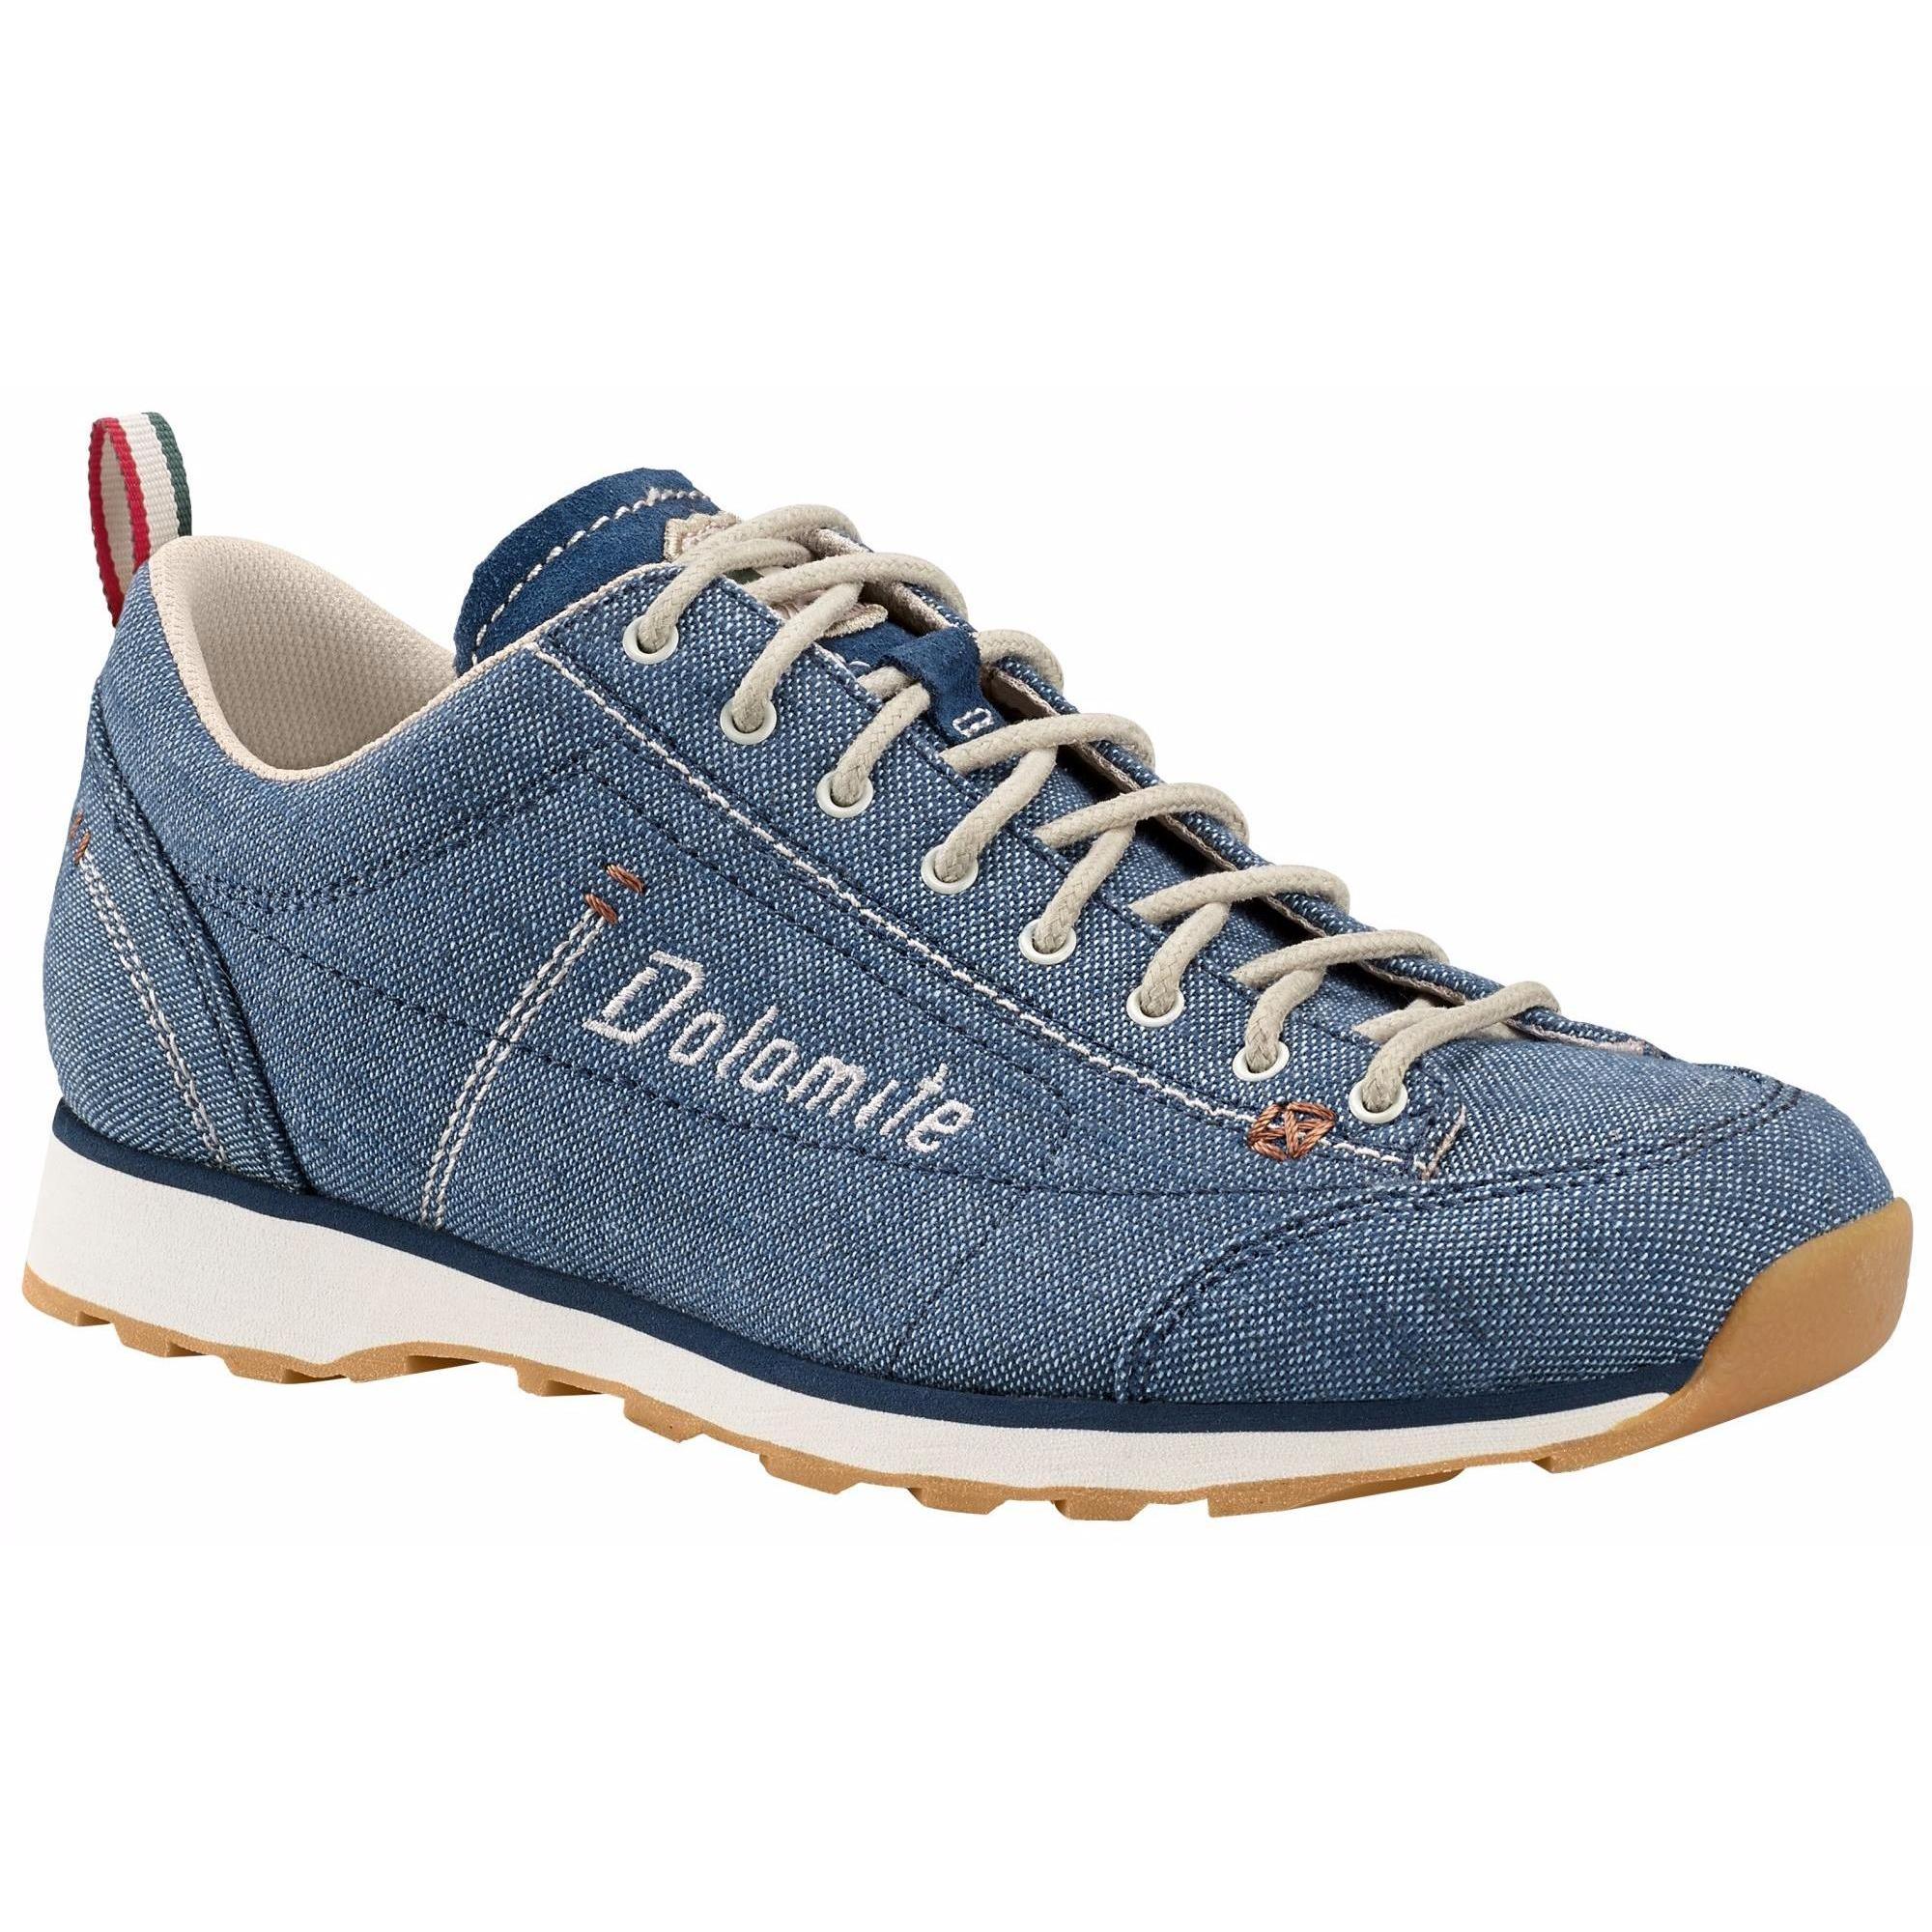 Ботинки Dolomite Cinquantaquattro LH Canvas, denim blue/canapa beige, 6.5 UK